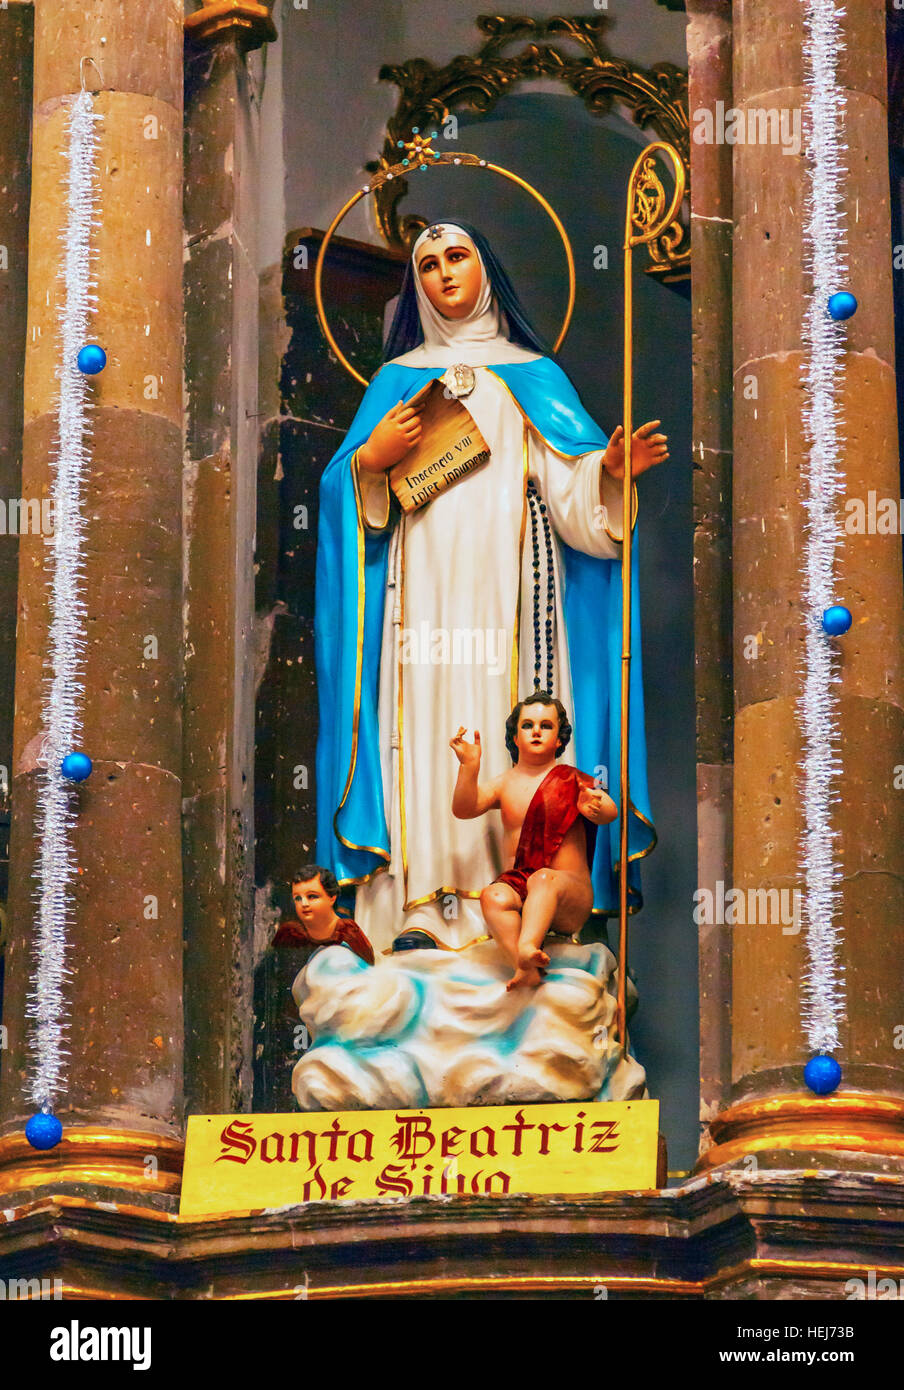 Saint Beatrice statua fondatore ordine Convento Immacolata Concezione le Monache di San Miguel De Allende, Messico. Foto Stock